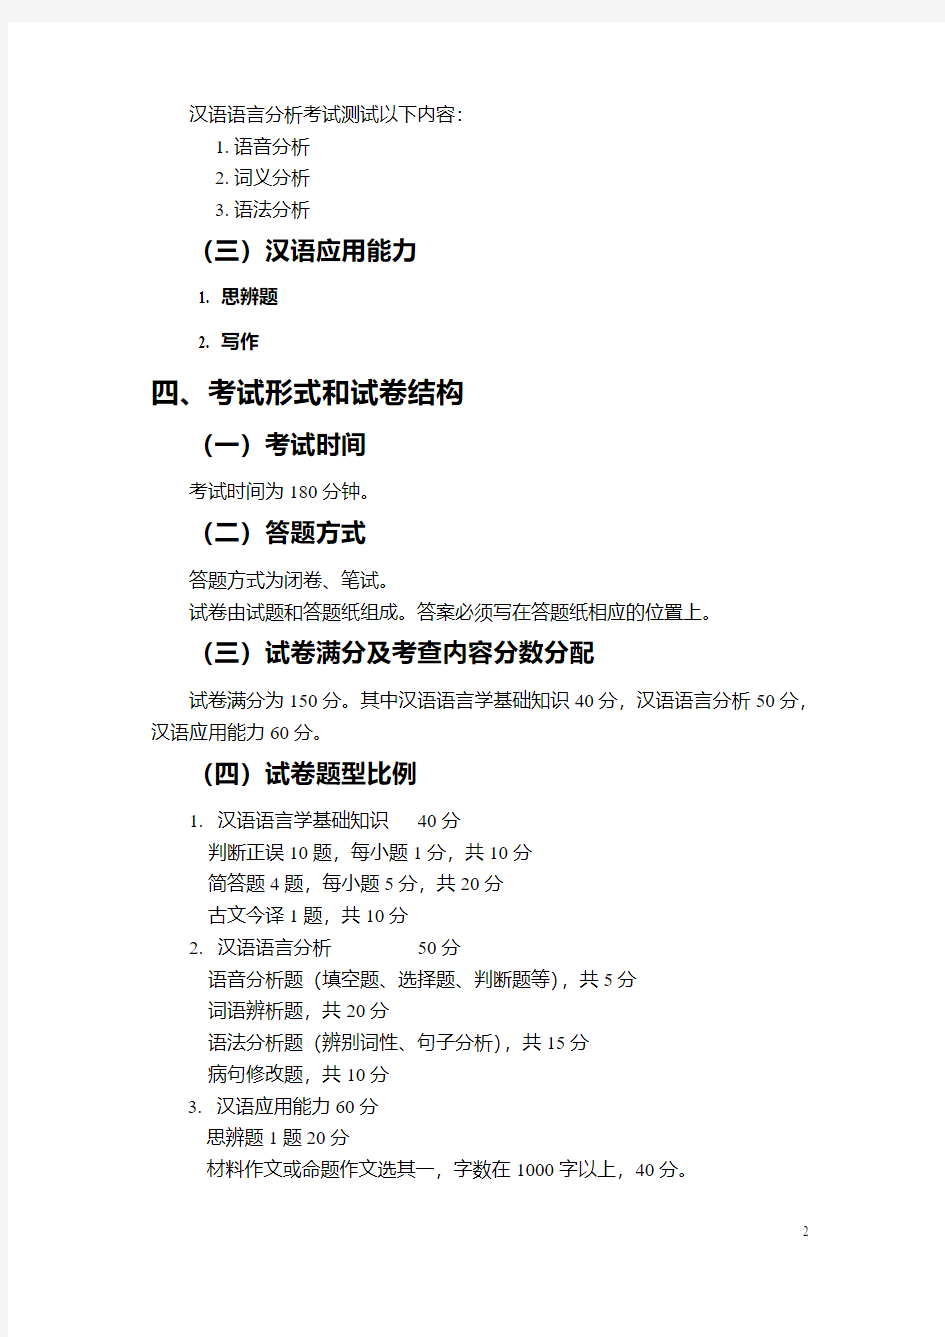 354汉语基础考试大纲